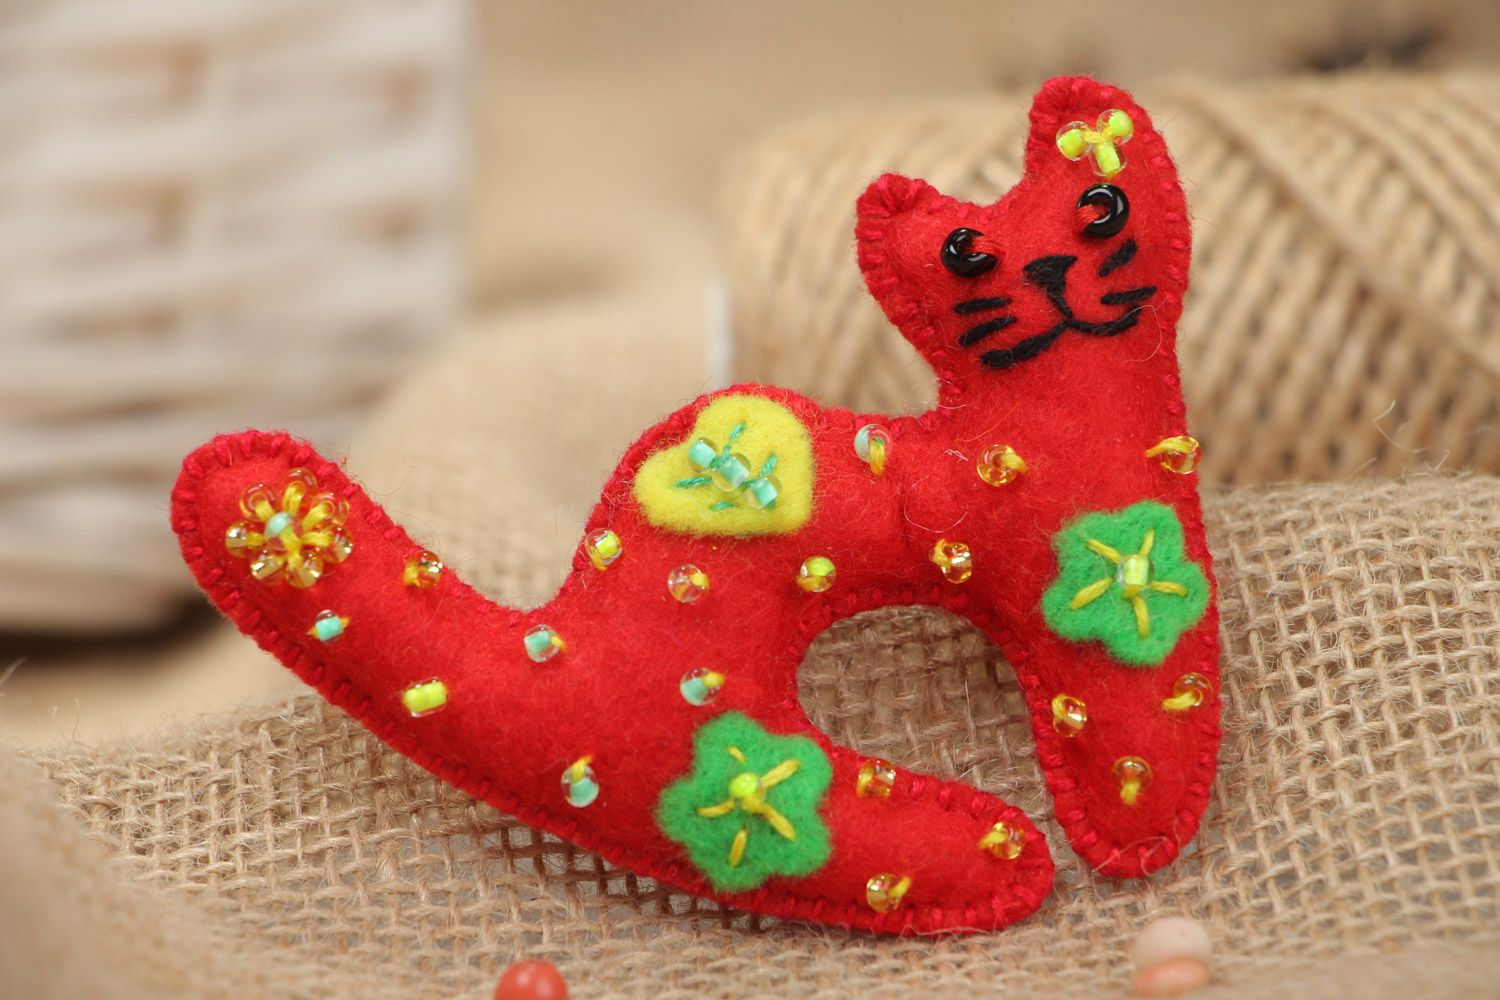 Фетровая игрушка для декора маленькая в виде красного кота пошитая вручную  фото 1